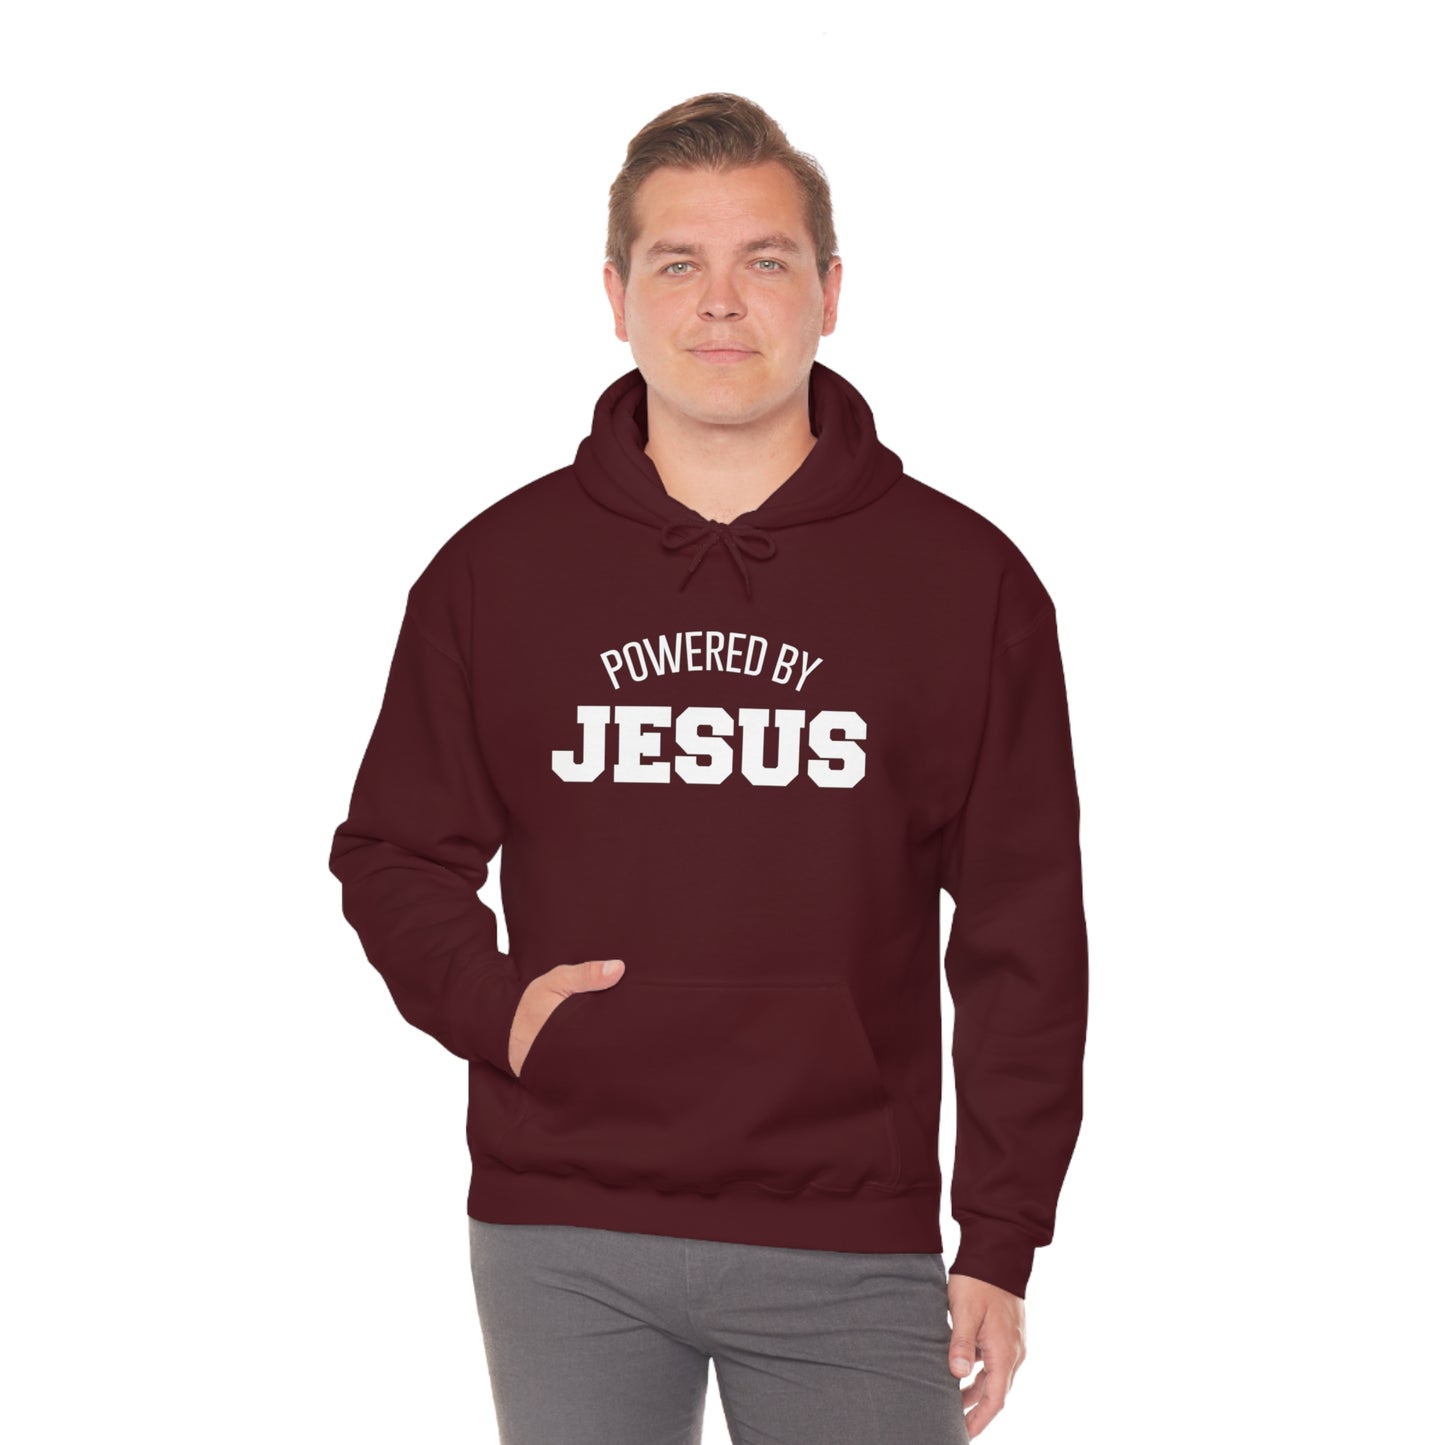 Powered by JESUS Hooded Sweatshirt